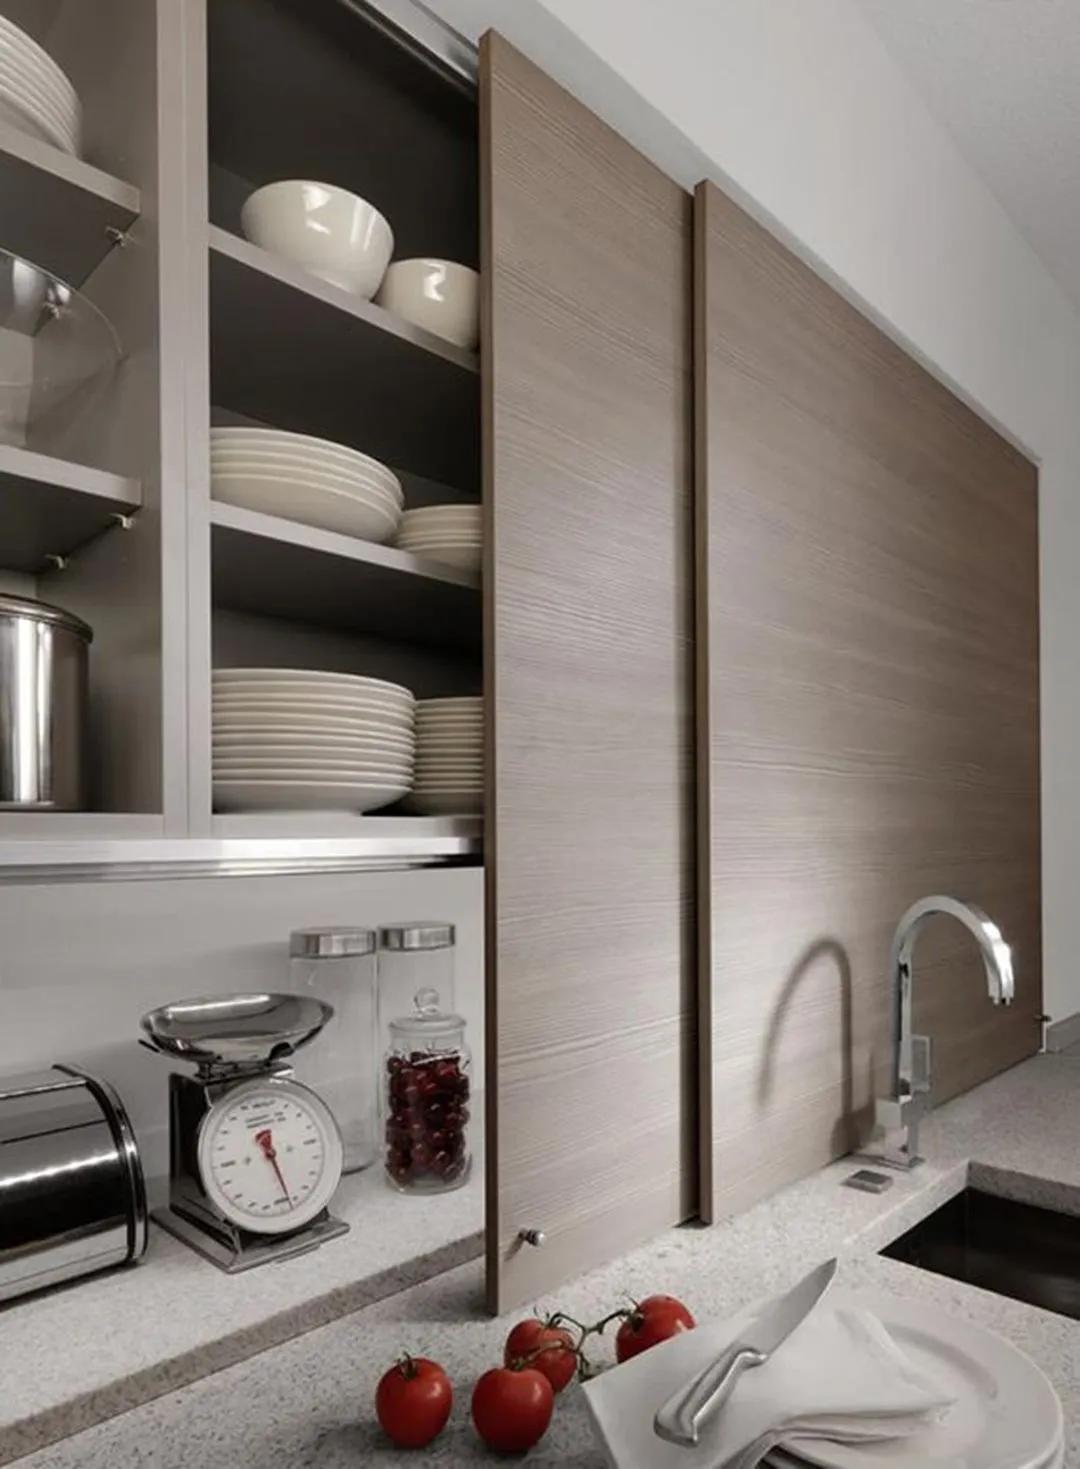 Cửa trượt bằng gỗ giúp 'che giấu' hệ thống tủ lưu trữ mở trên bức tường phòng bếp, sau khi sử dụng chỉ cần một thao tác đẩy nhẹ là bạn chỉ thấy một bức tường gỗ mộc mạc mà thôi.